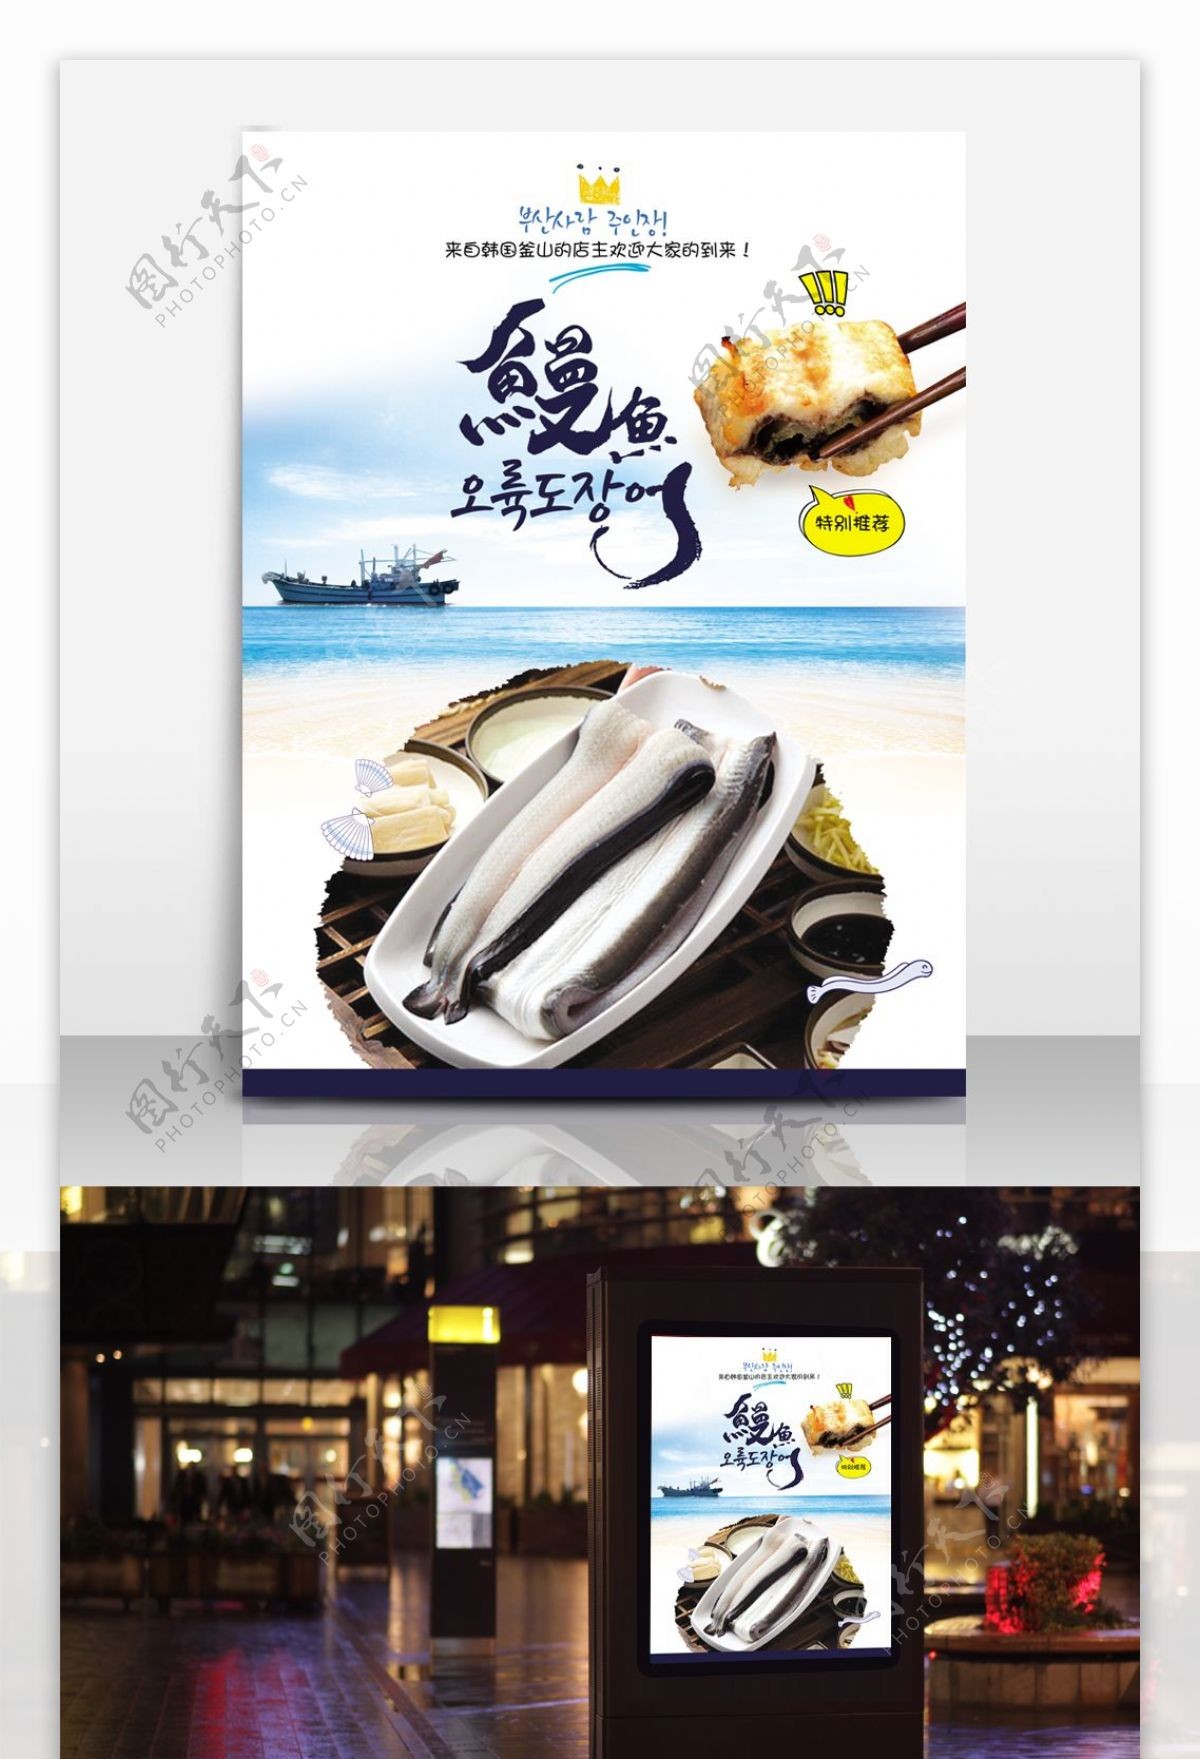 韩国料理餐厅美食海报设计